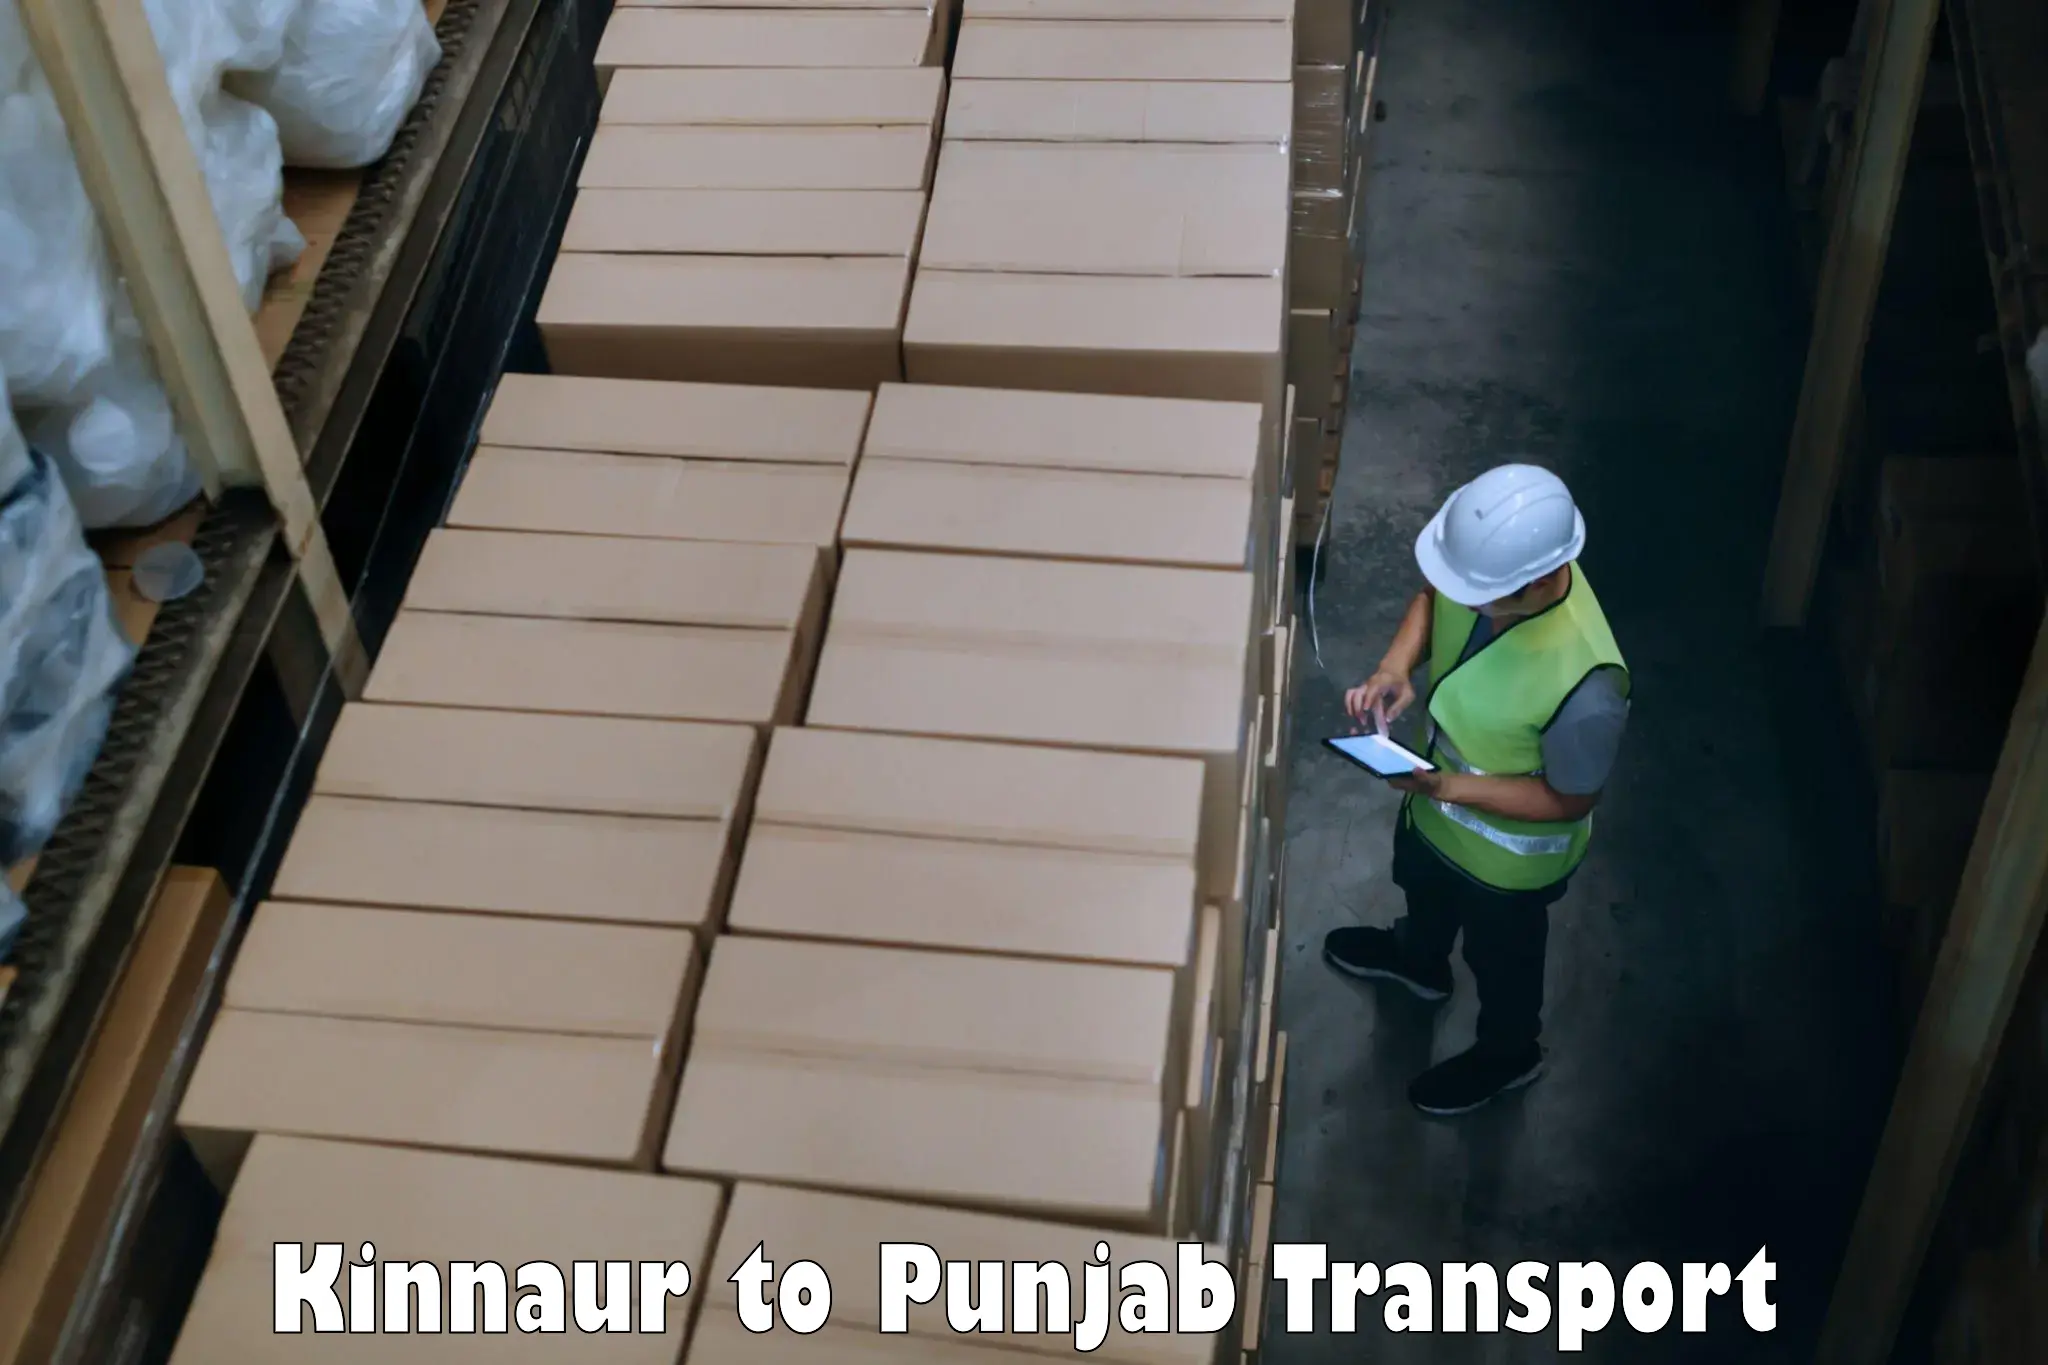 Transport shared services Kinnaur to Gurdaspur